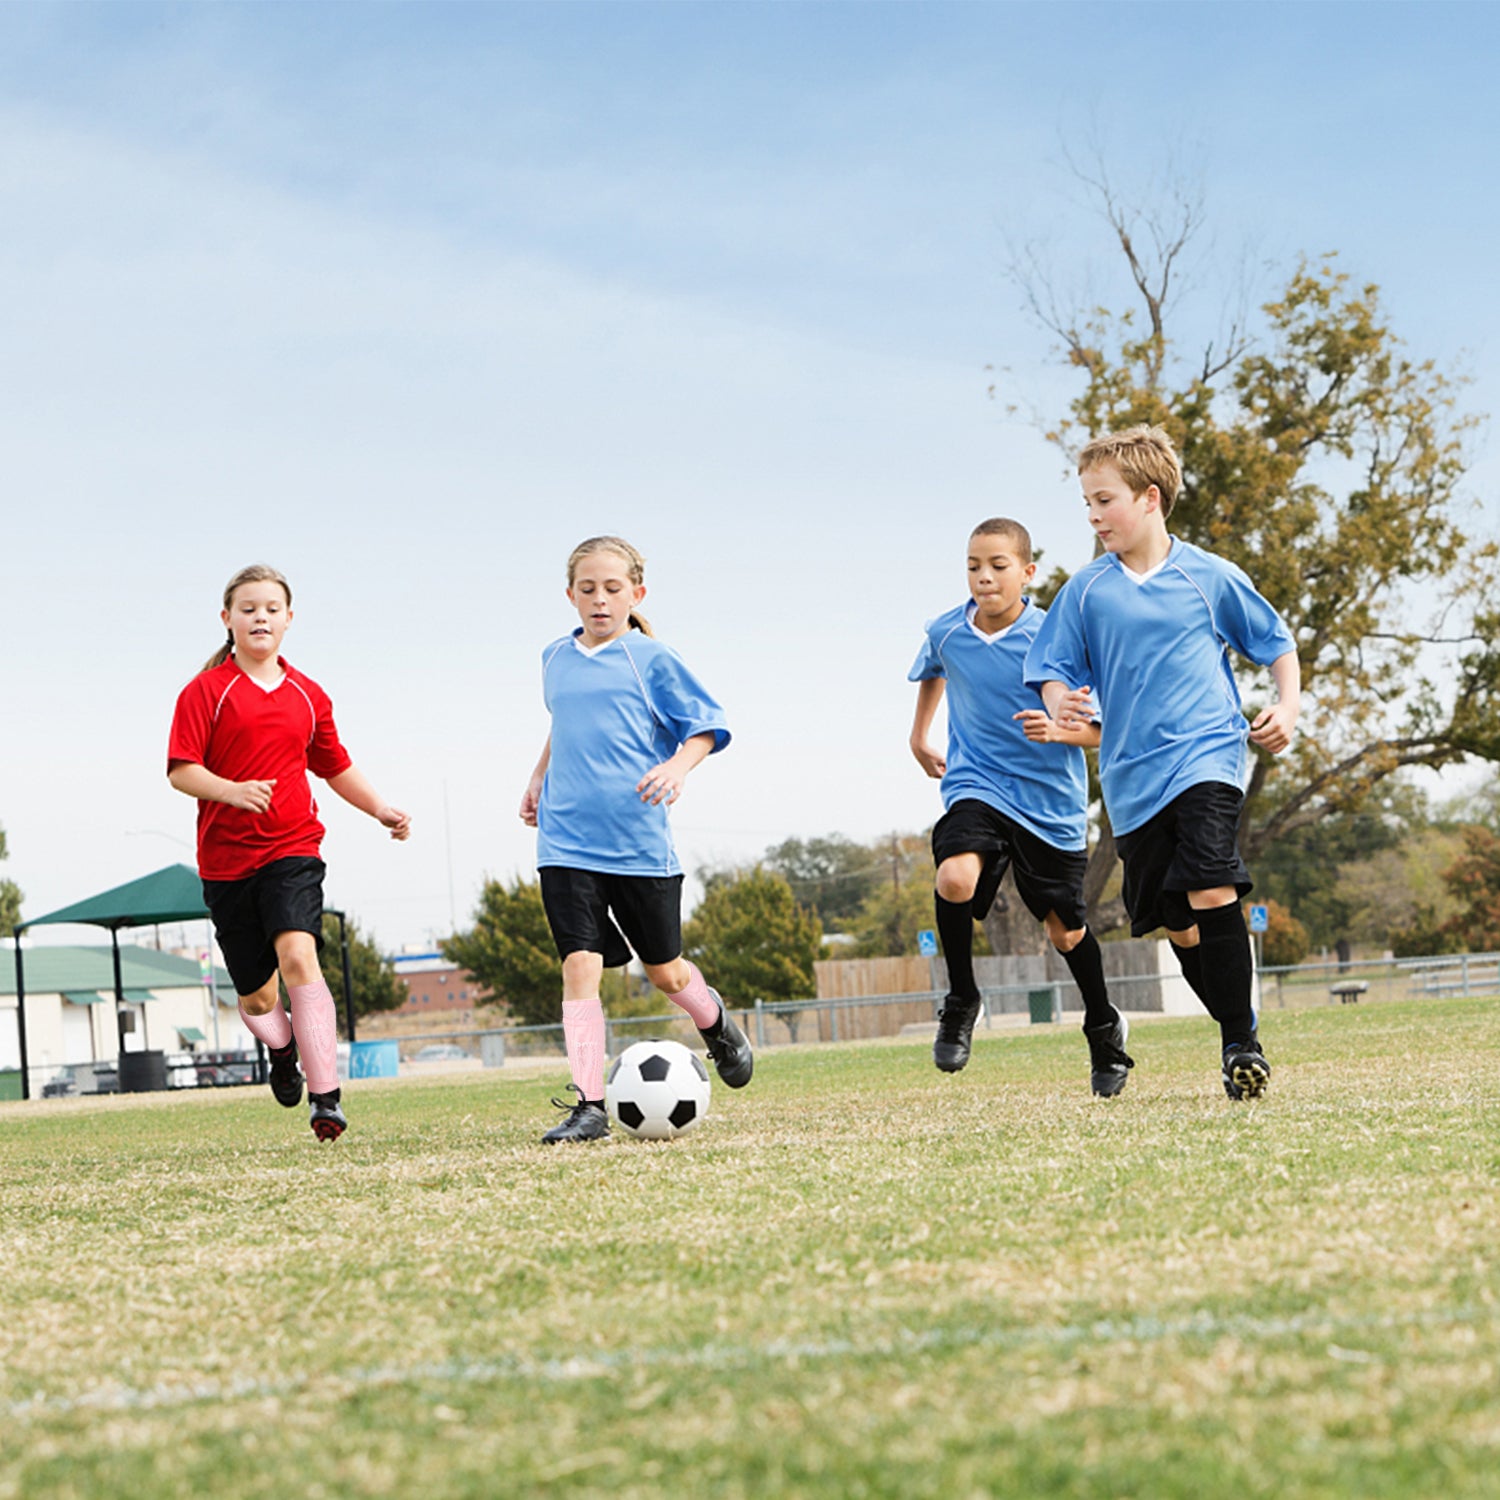 Gonex Soccer Schienbeinschoner für Kinder und Erwachsene